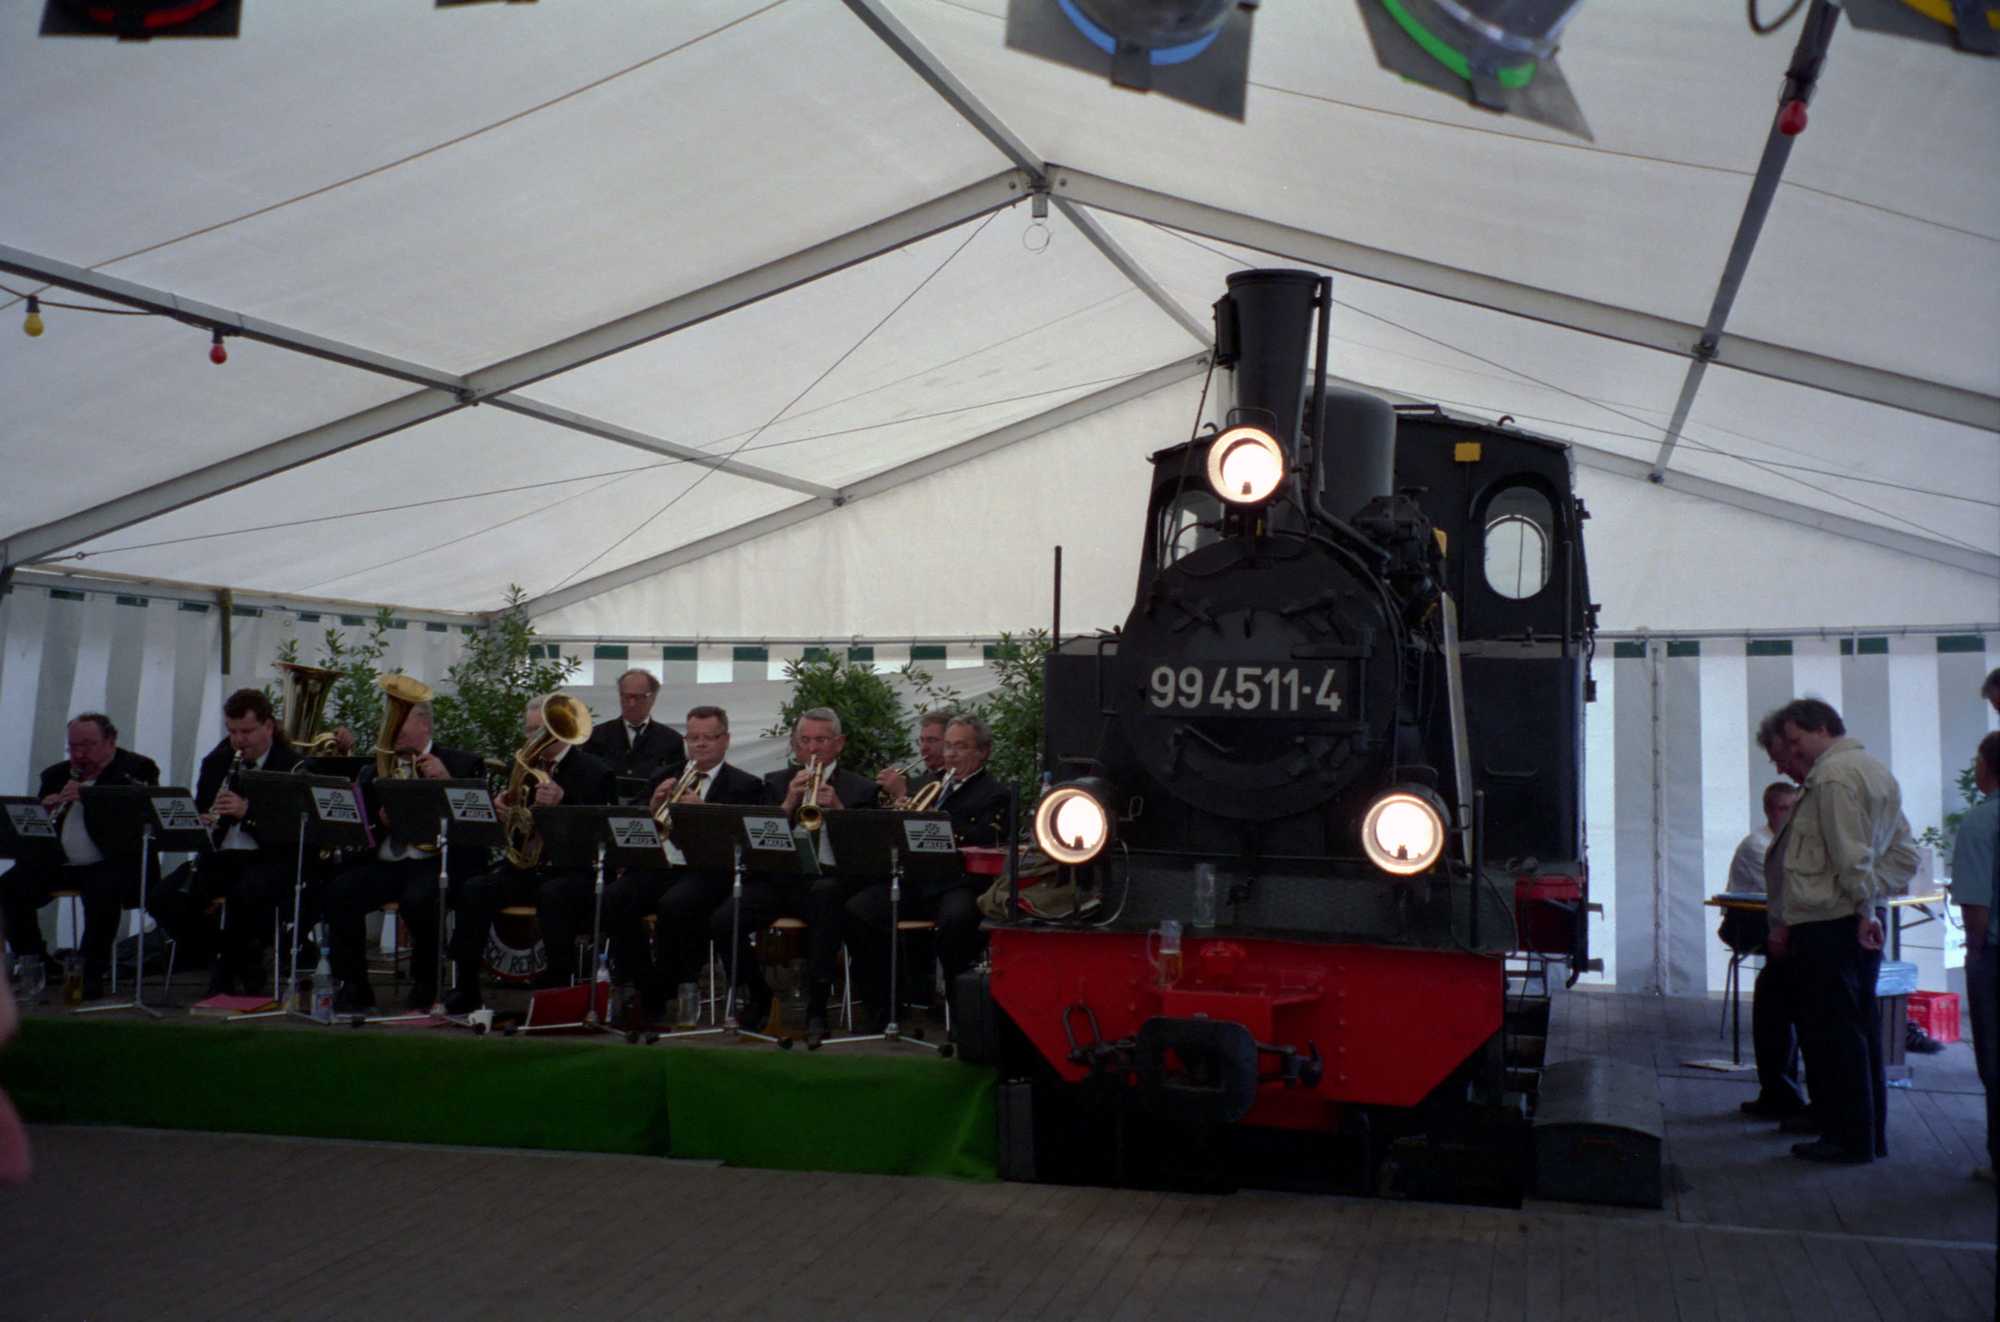 Zu Pfingsten 1999 stand das erste und einzige Mal eine Dampflok bei der Preßnitztalbahn im Festzelt - 99 4511-4 machte hier auf ihre vorgesehene Aufarbeitung aufmerksam.